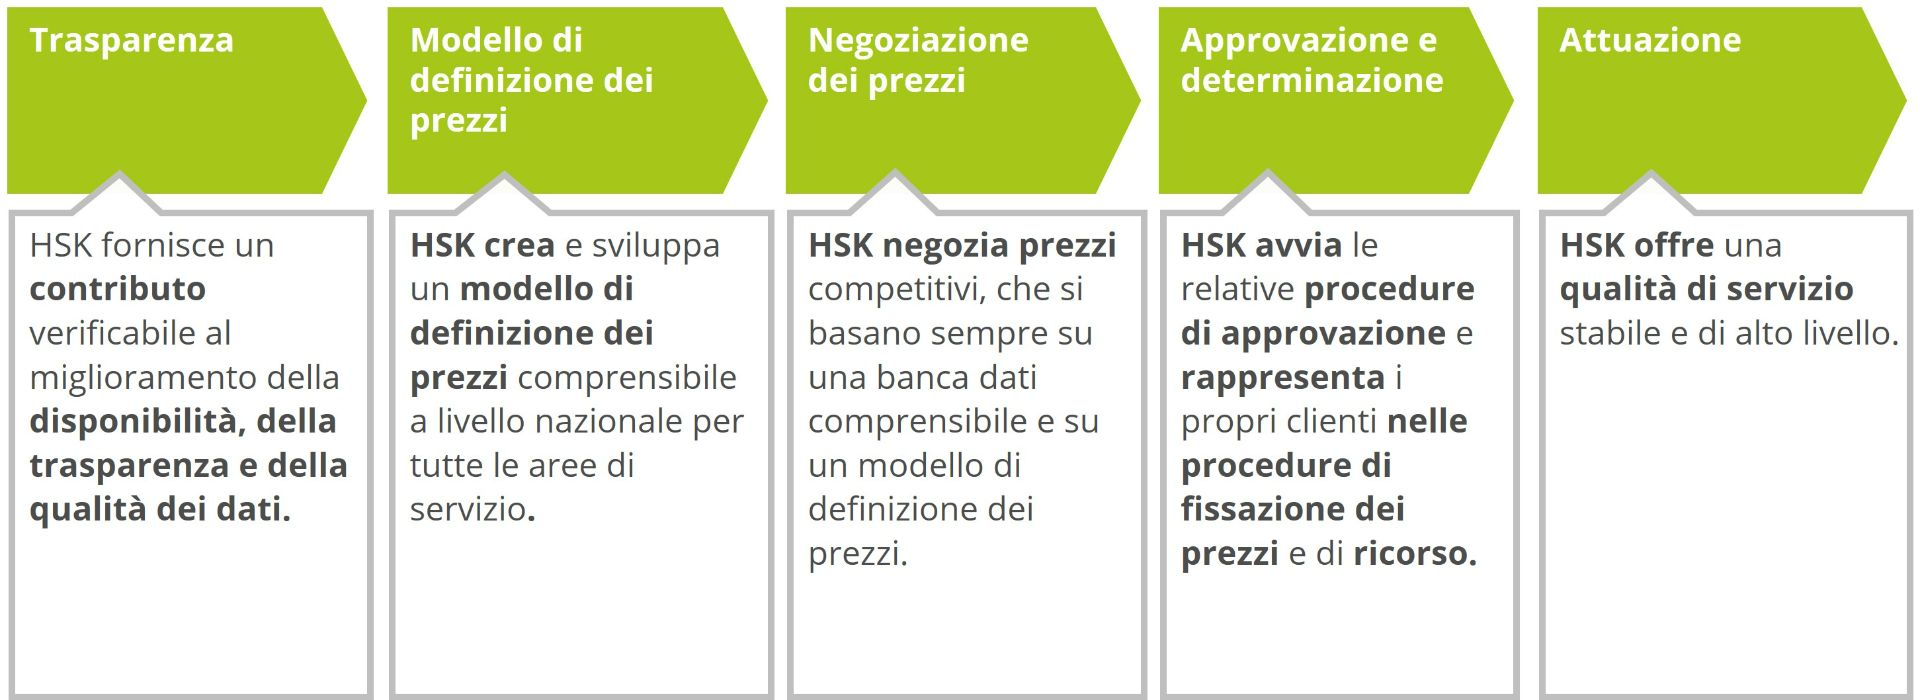 Fig. 1: Catena del valore aggiunto della Cooperativa di acquisti HSK con il credo della determinazione dei prezzi basata sui dati